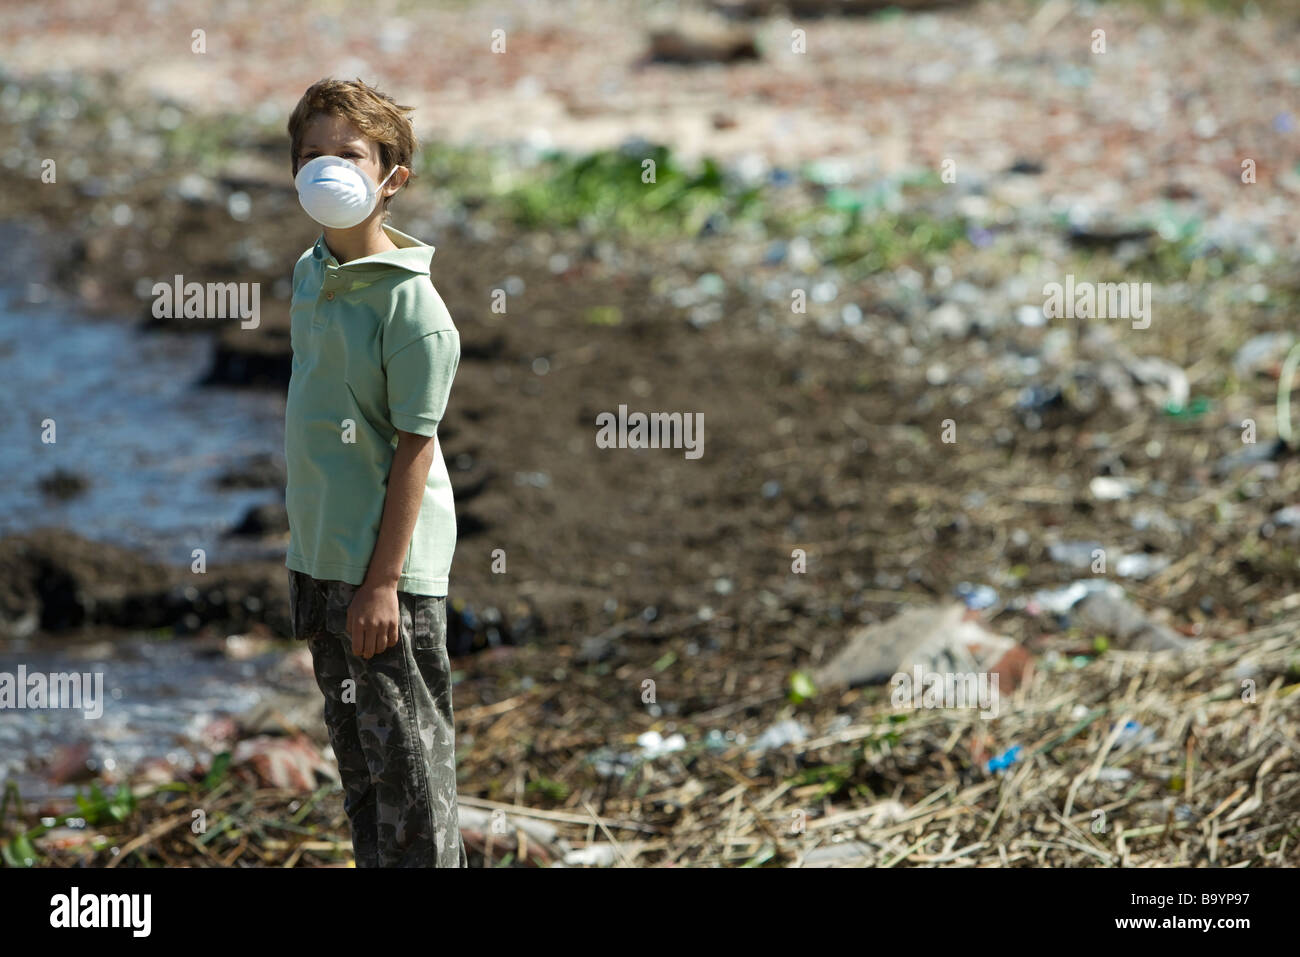 Junge stand auf verschmutzten Ufer, Verschmutzung Maske trägt Stockfoto